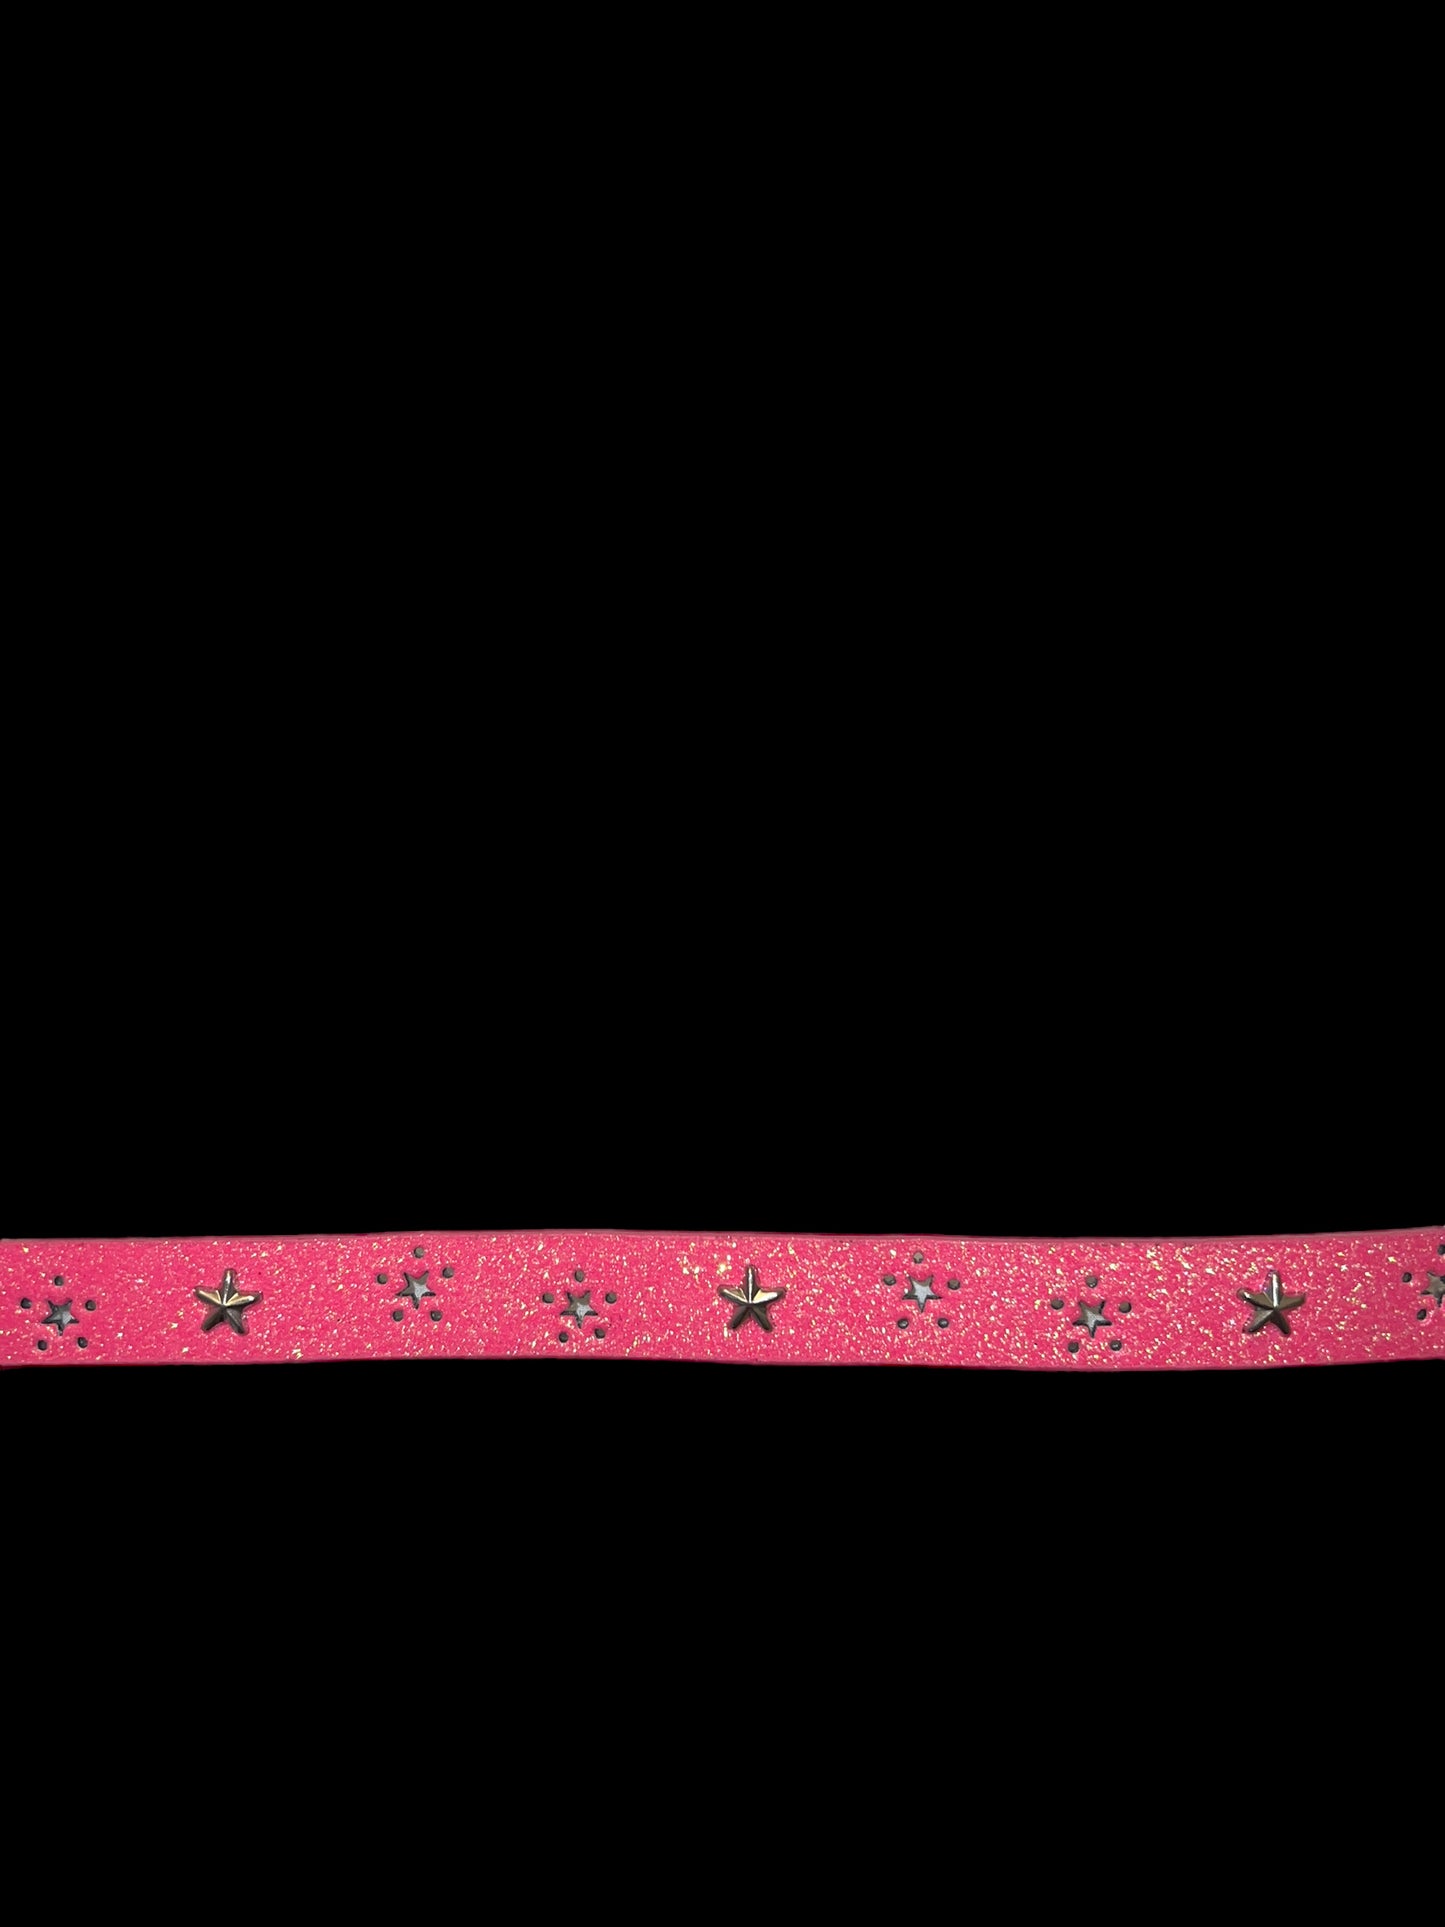 Hot pink glittery belt